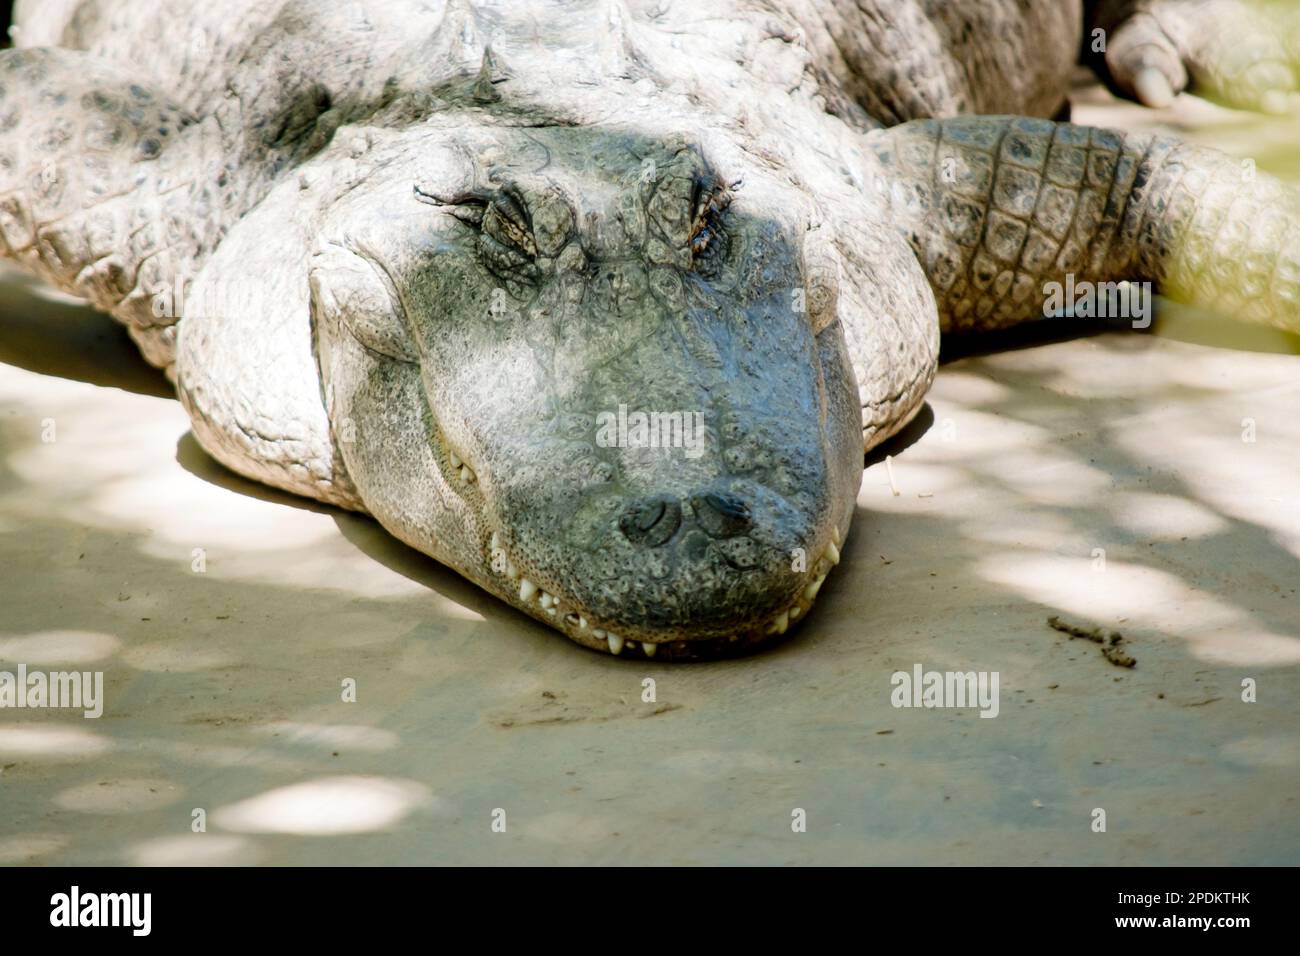 Gli alligatori hanno un muso lungo e arrotondato che ha narici rivolte verso l'alto alla fine; questo permette che la respirazione avvenga mentre il resto del corpo è underwa Foto Stock